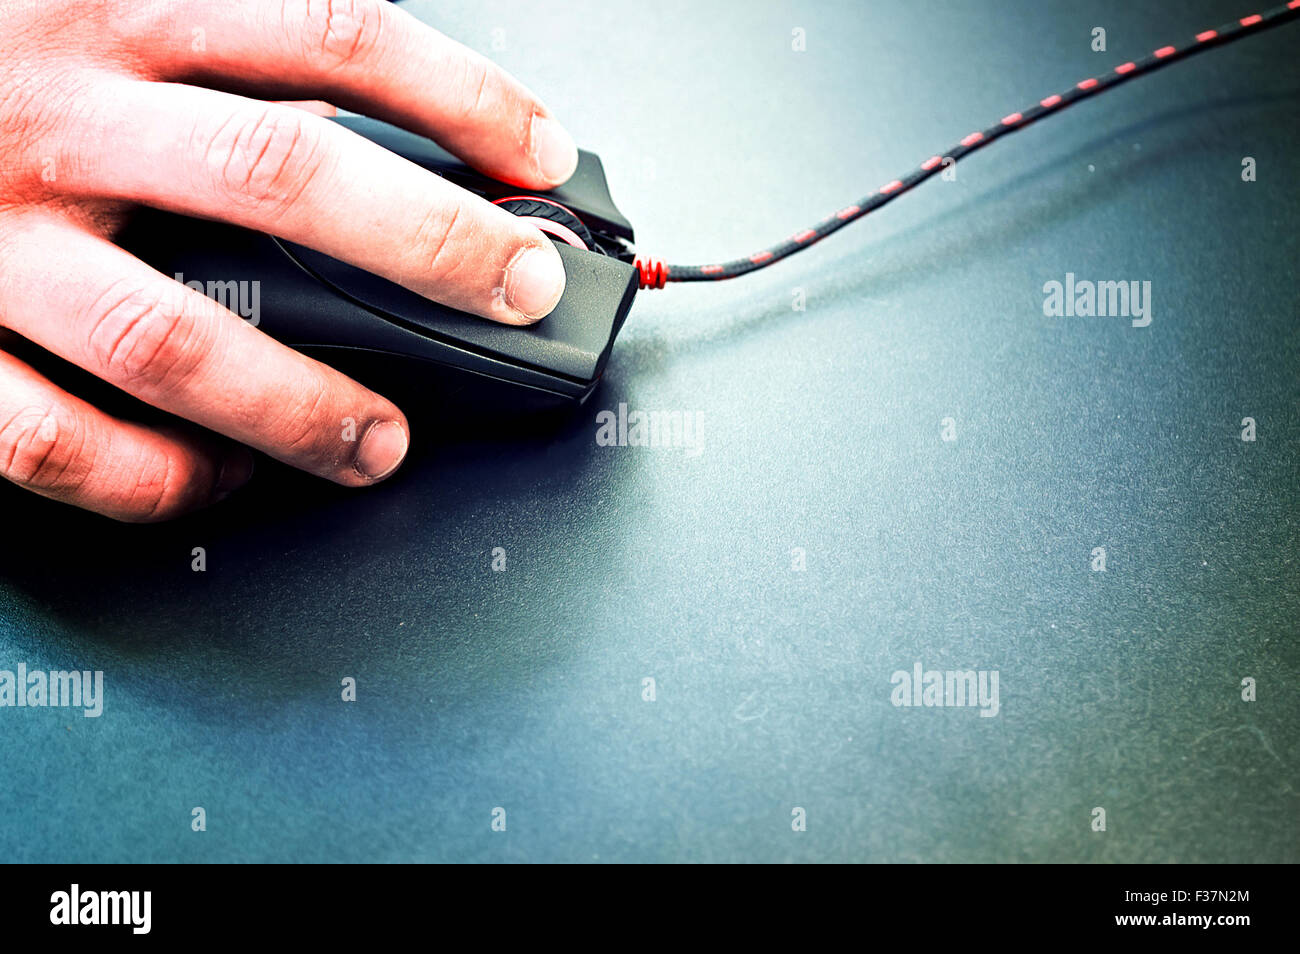 Männliche Hand, die Computer-Maus auf schwarzem Untergrund. Computer Technologie Konzeptbild. Stockfoto